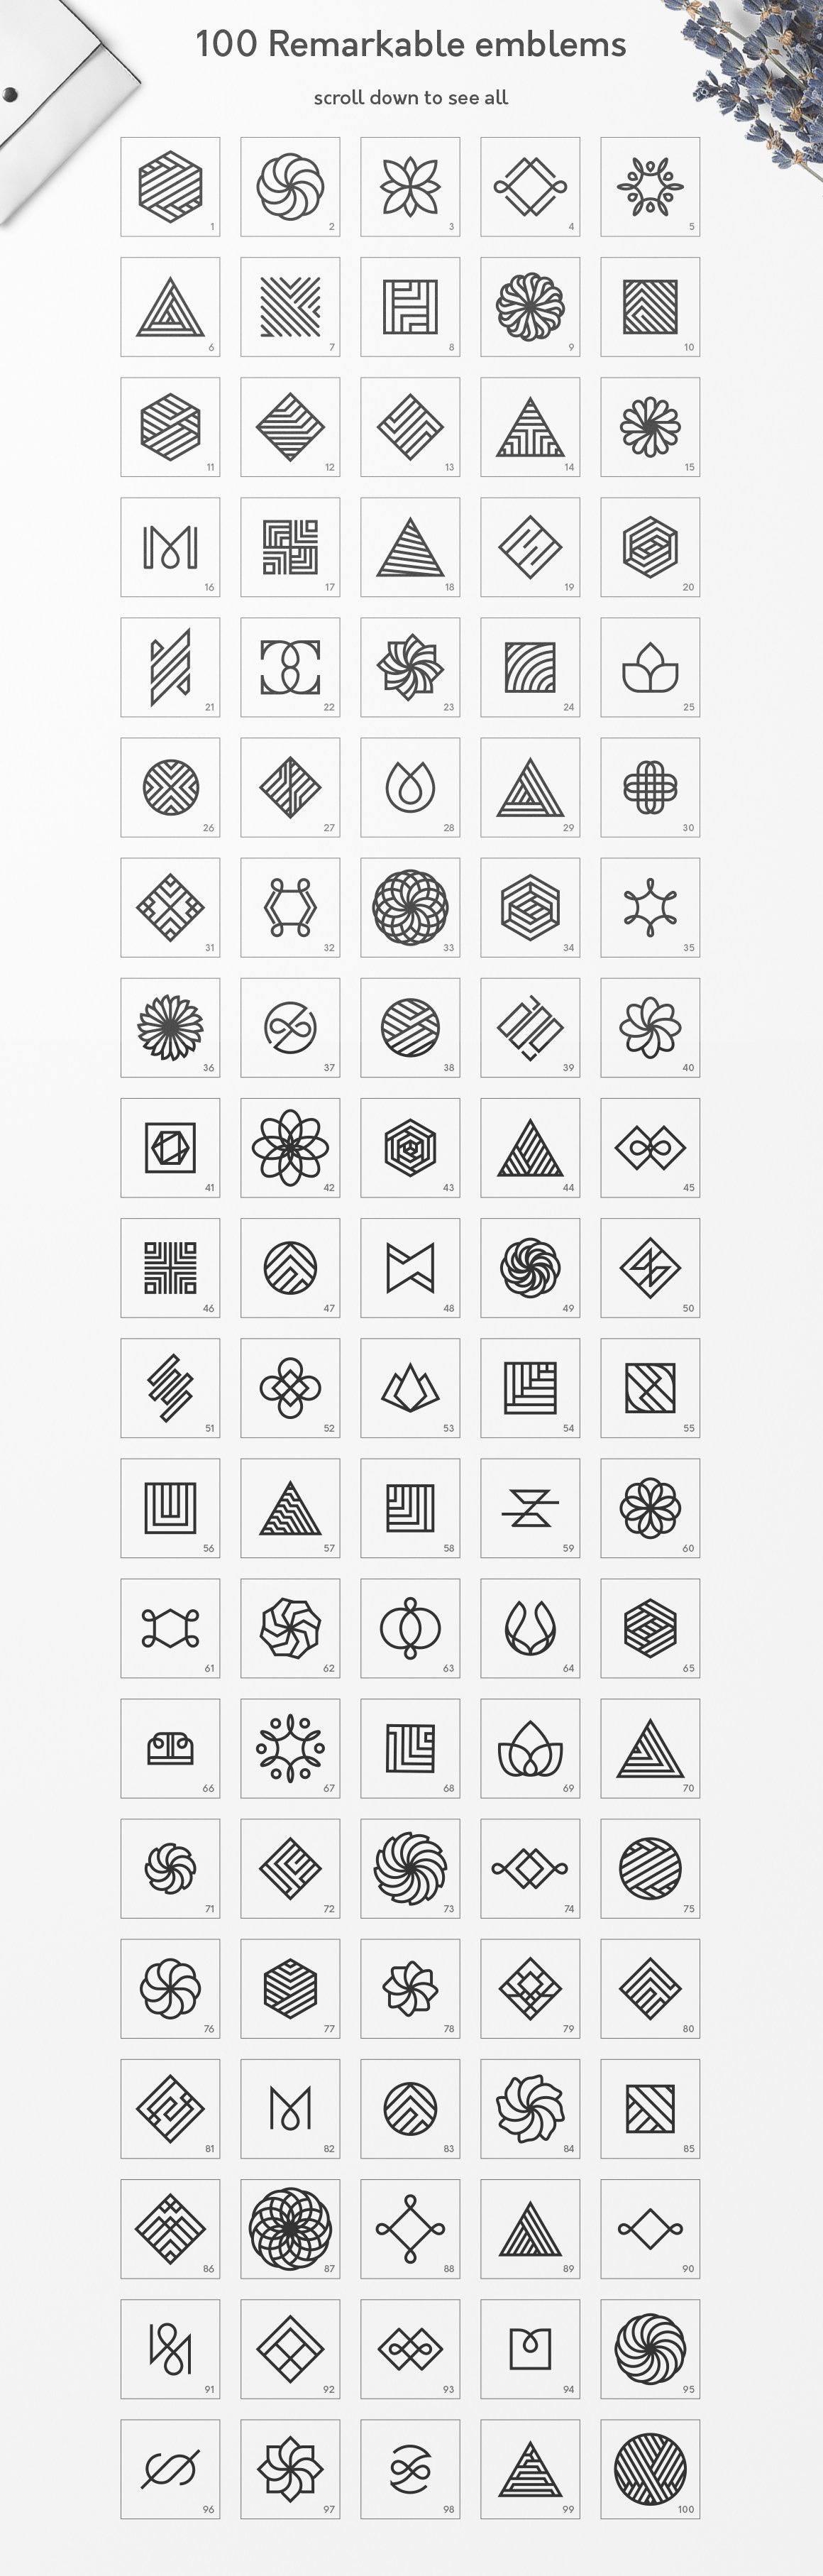 857 100款高级简约风格AI矢量几何图形LOGO素材 Geometric-Logos